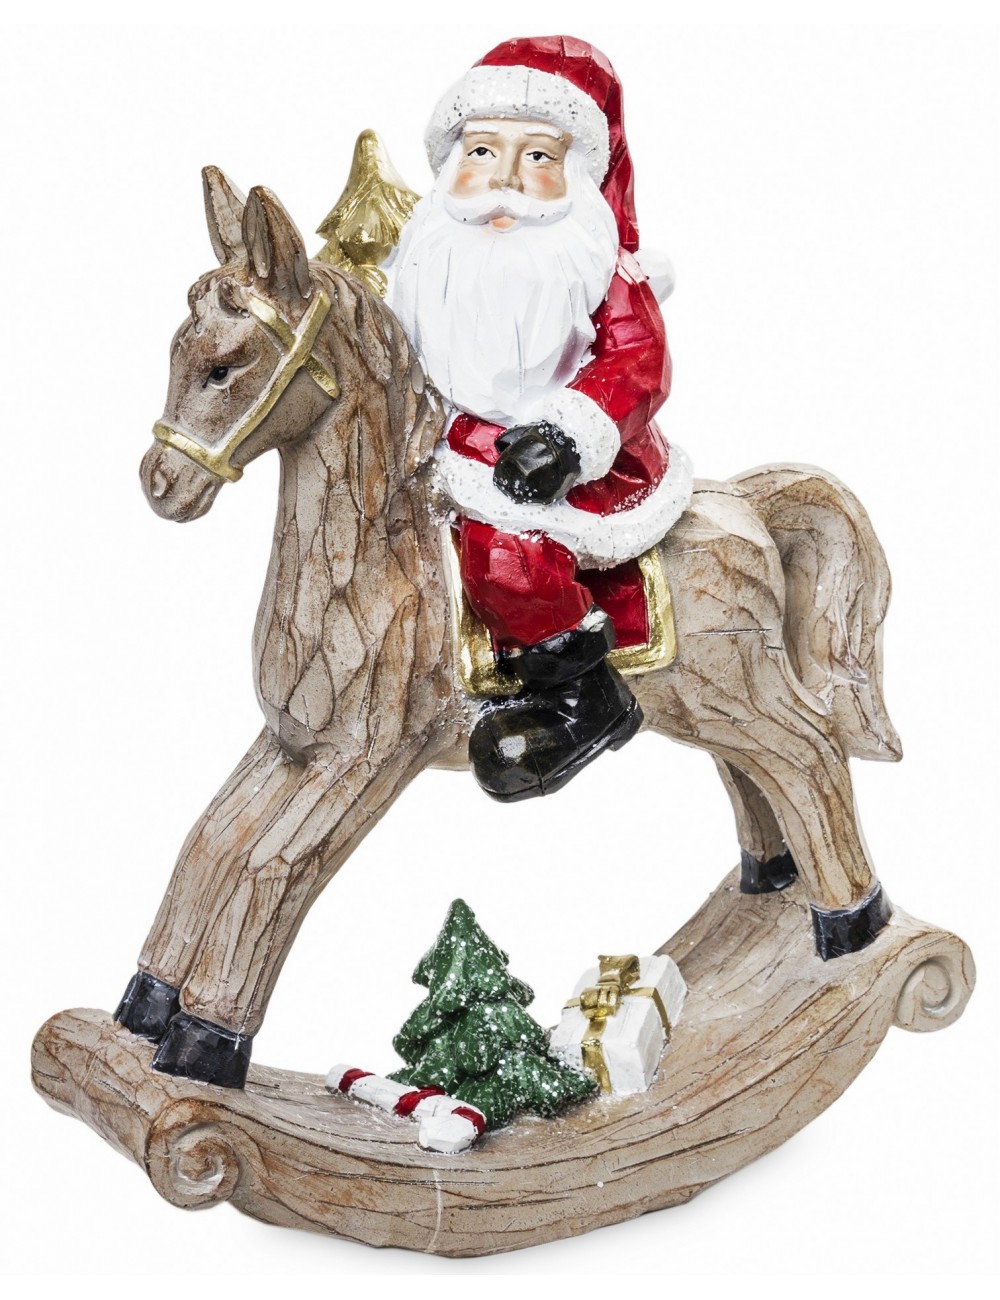 Figurka świąteczna ŚWIĘTY MIKOŁAJ na koniku na biegunach 23,5x18 cm